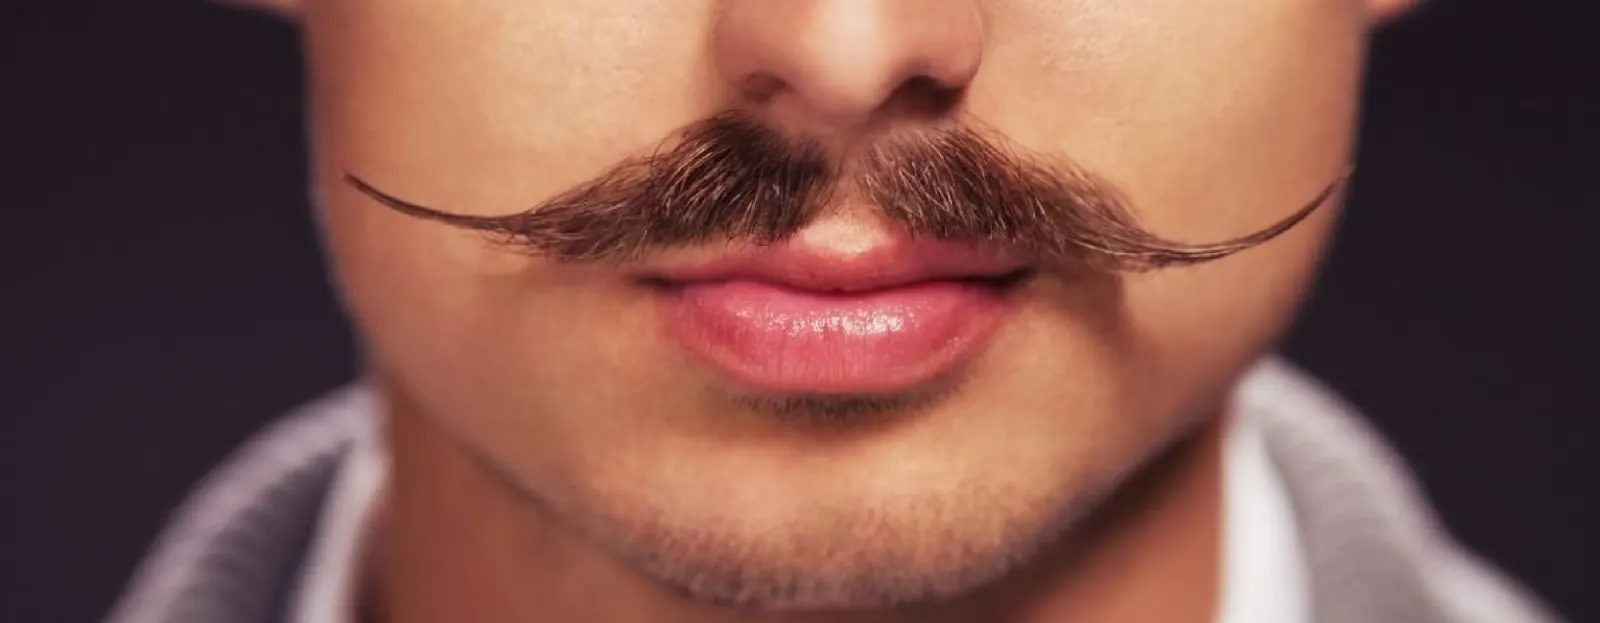 Reset jouw verzorgingsroutine tijdens Movember